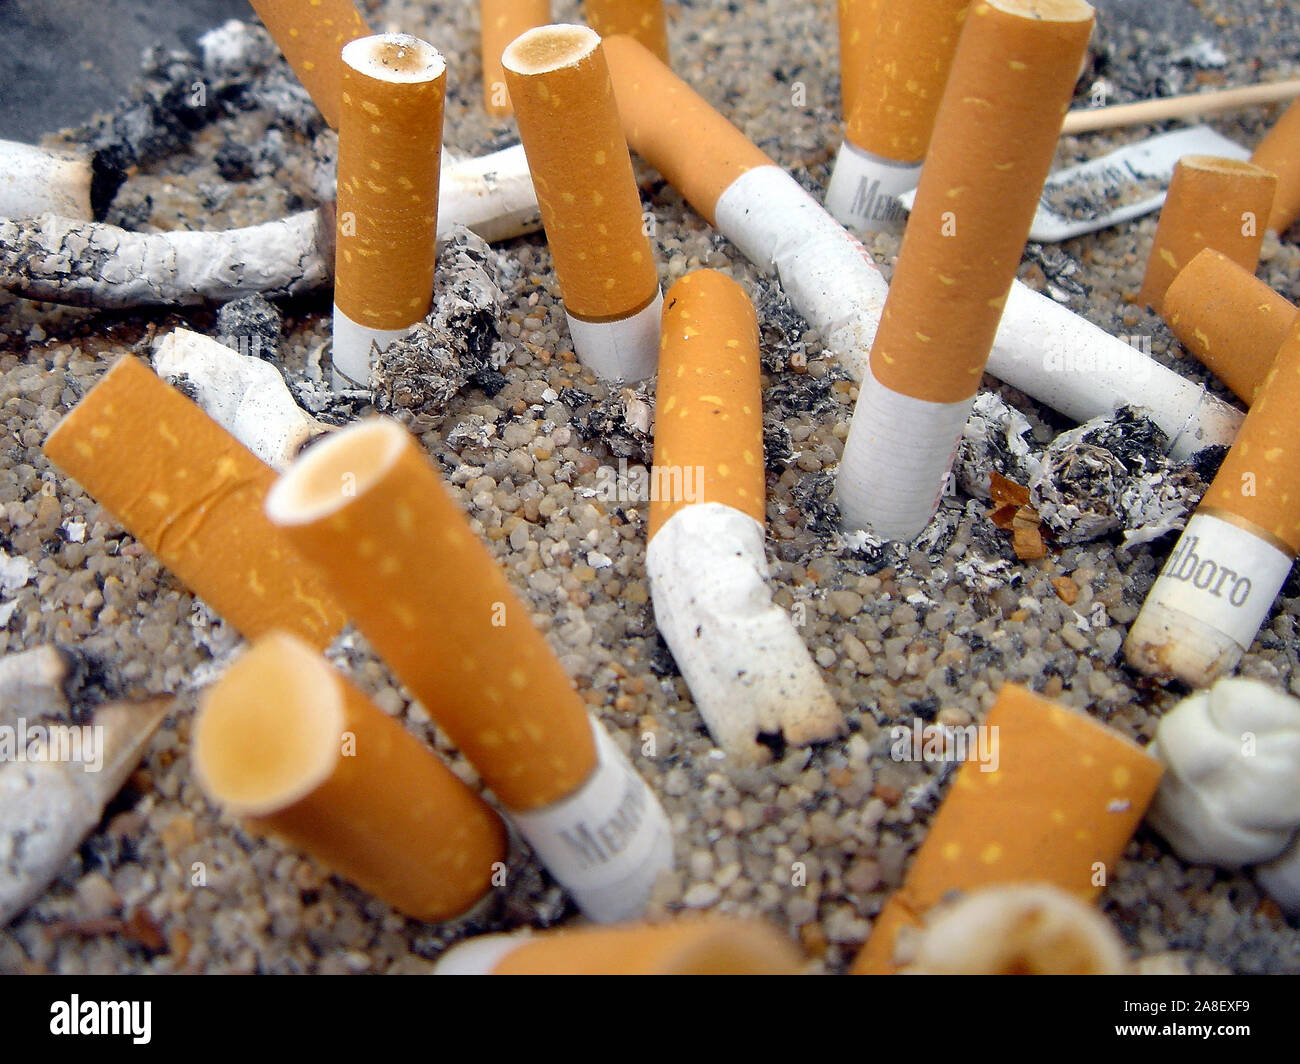 Zigarettenstummel, Aschenbecher, Zigaretten, Raucher, Asche, Foto de stock